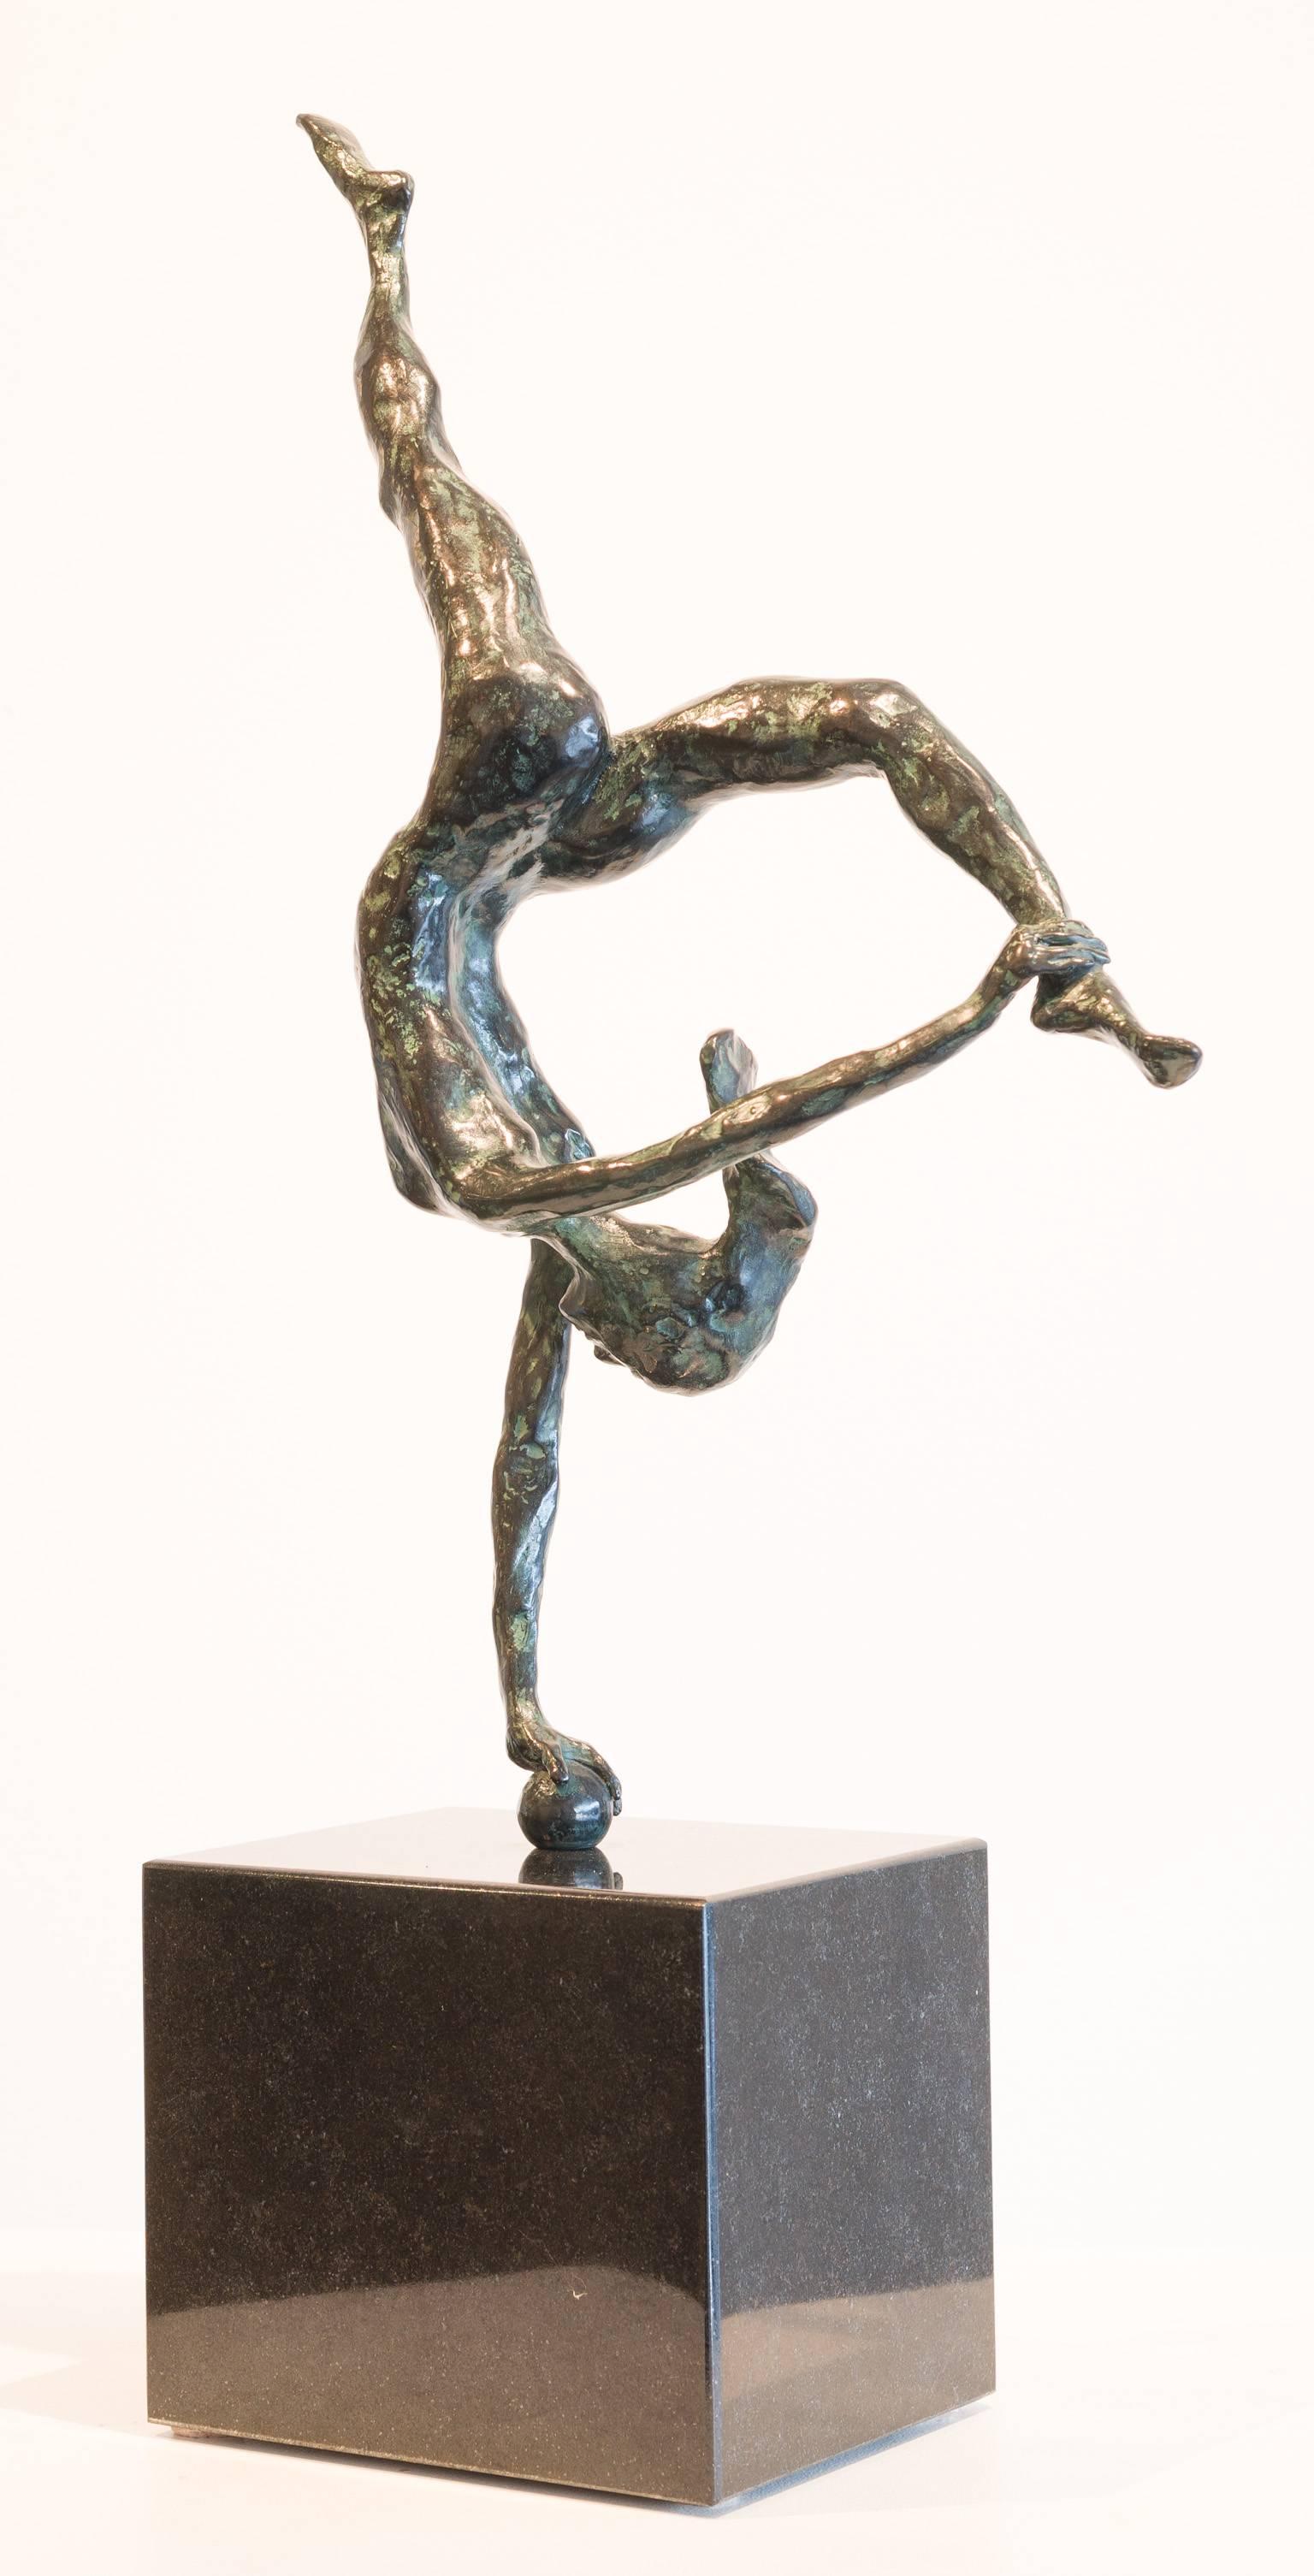 Dancer on Ball - Sculpture by Don Wilks